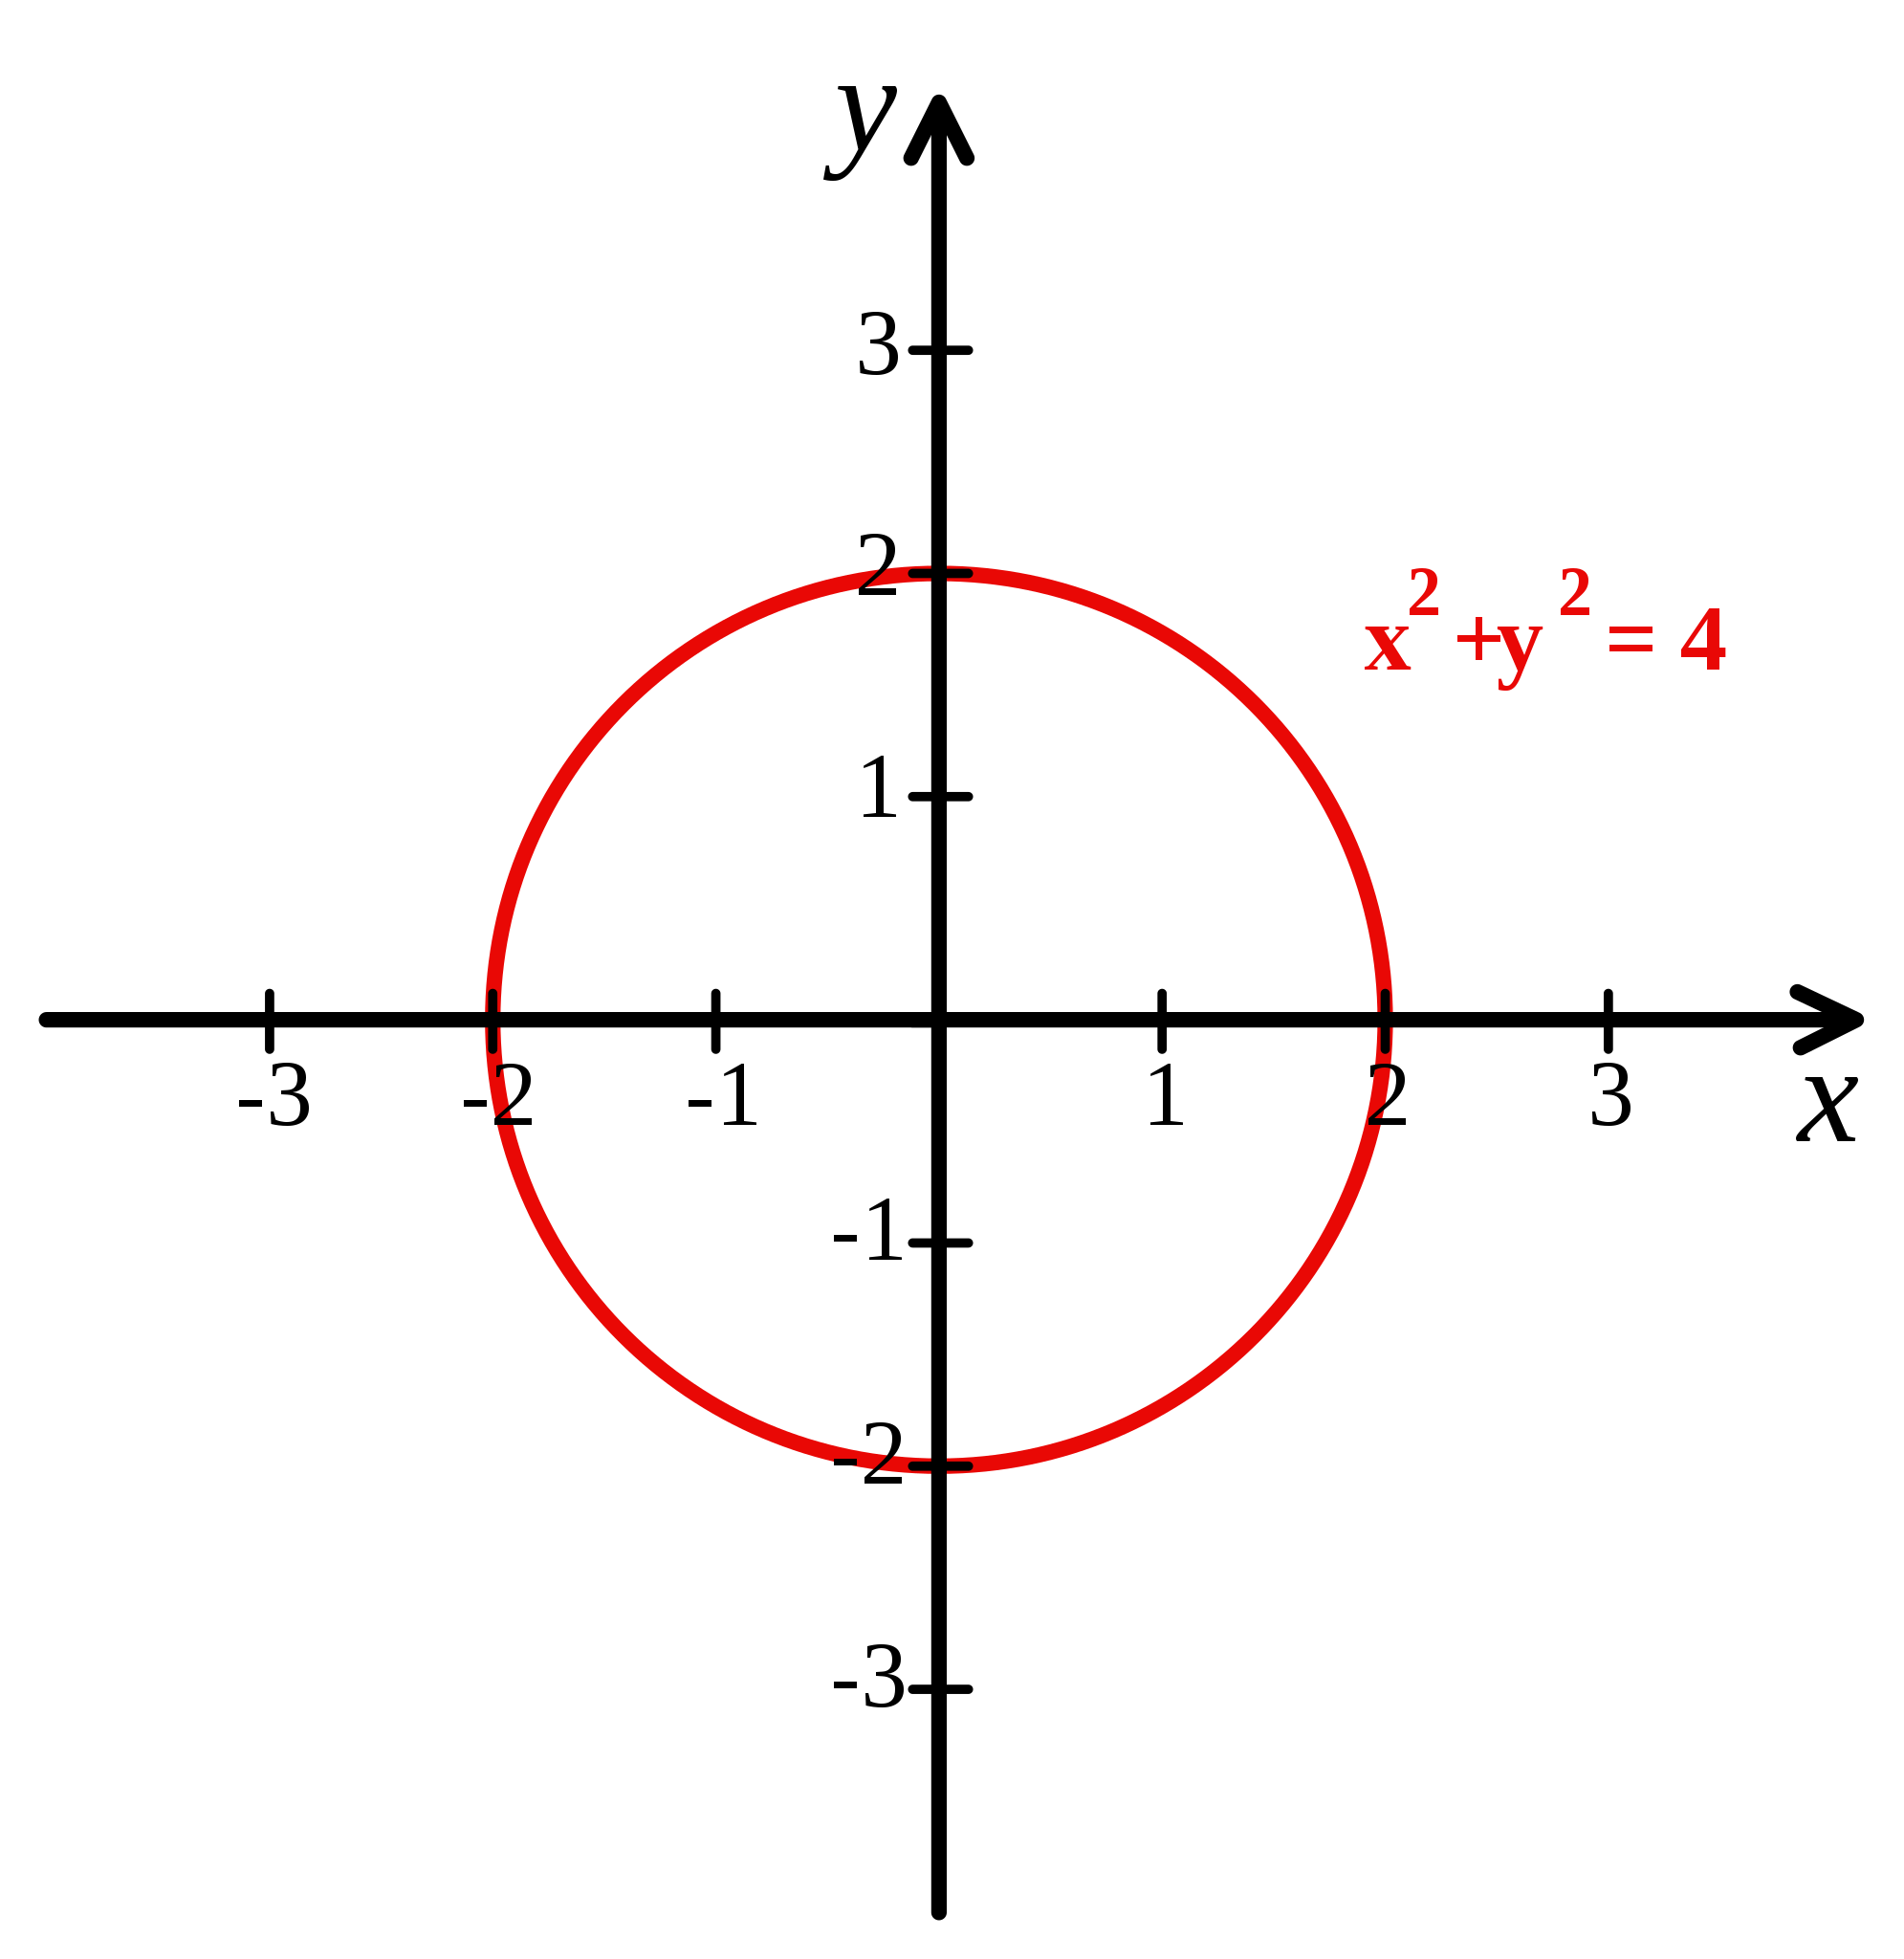 Sistema de coordenadas cartesianas con el círculo de radio 2 centrado en el origen marcado en rojo. La ecuación del círculo es x² + y² = 4.